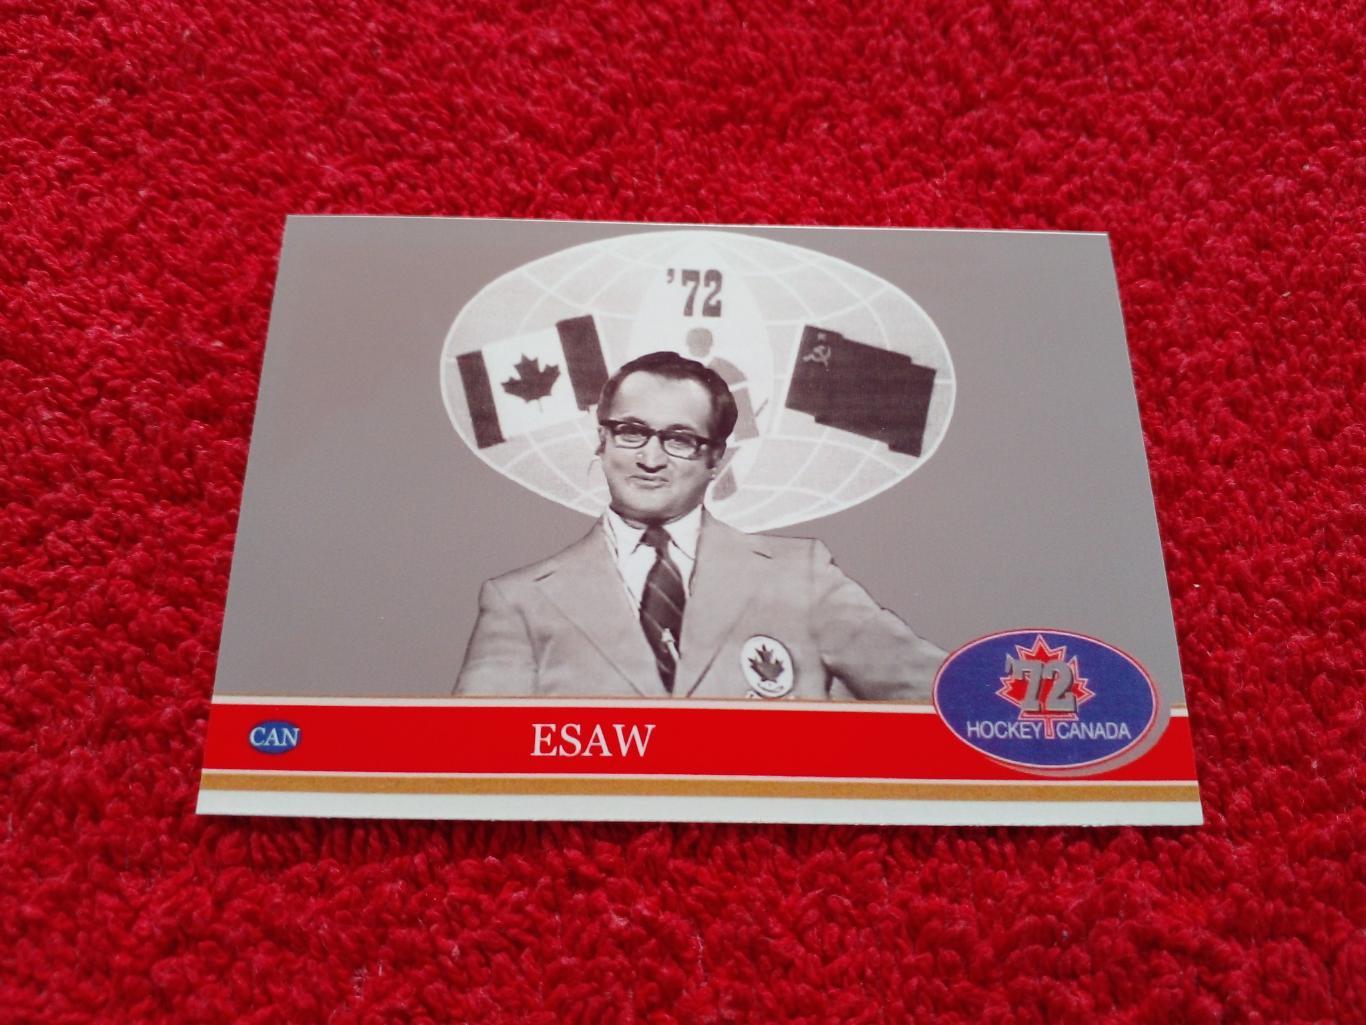 Джонни Исау. Хоккей СССР - Канада 1972. Редкая карточка.